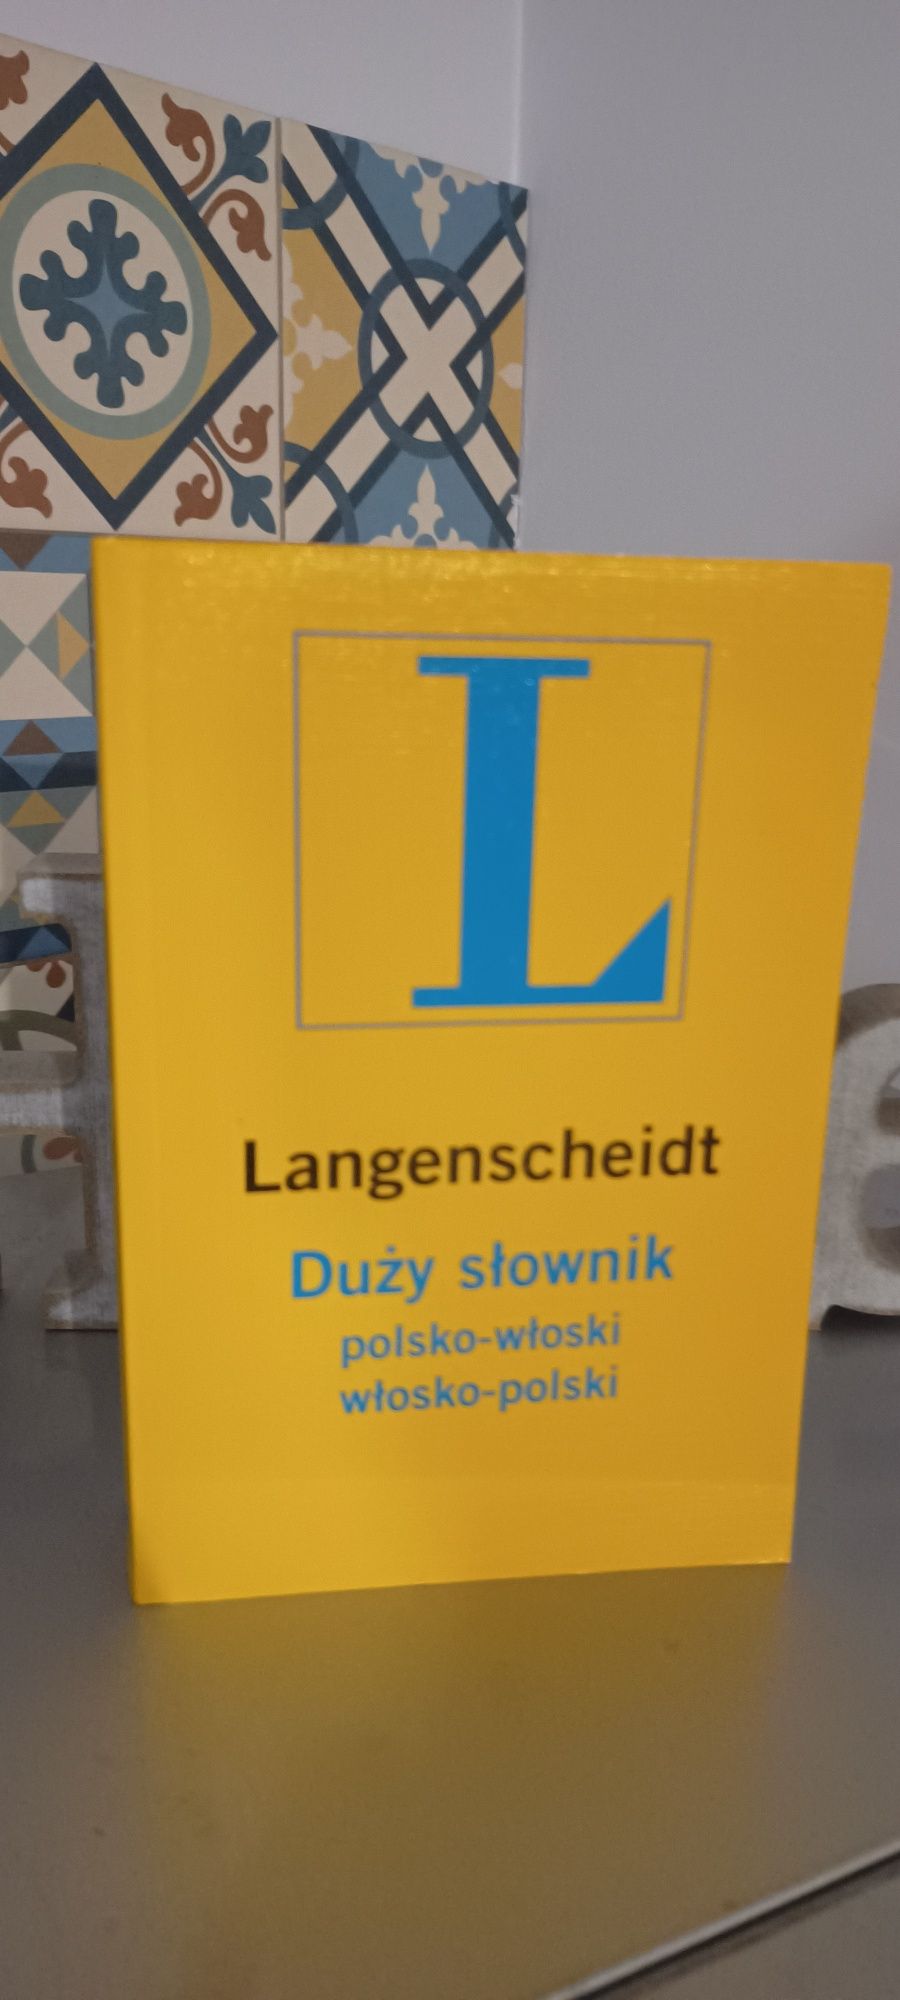 Duży Słownik Langenscheidt polsko-wloski włosko polski